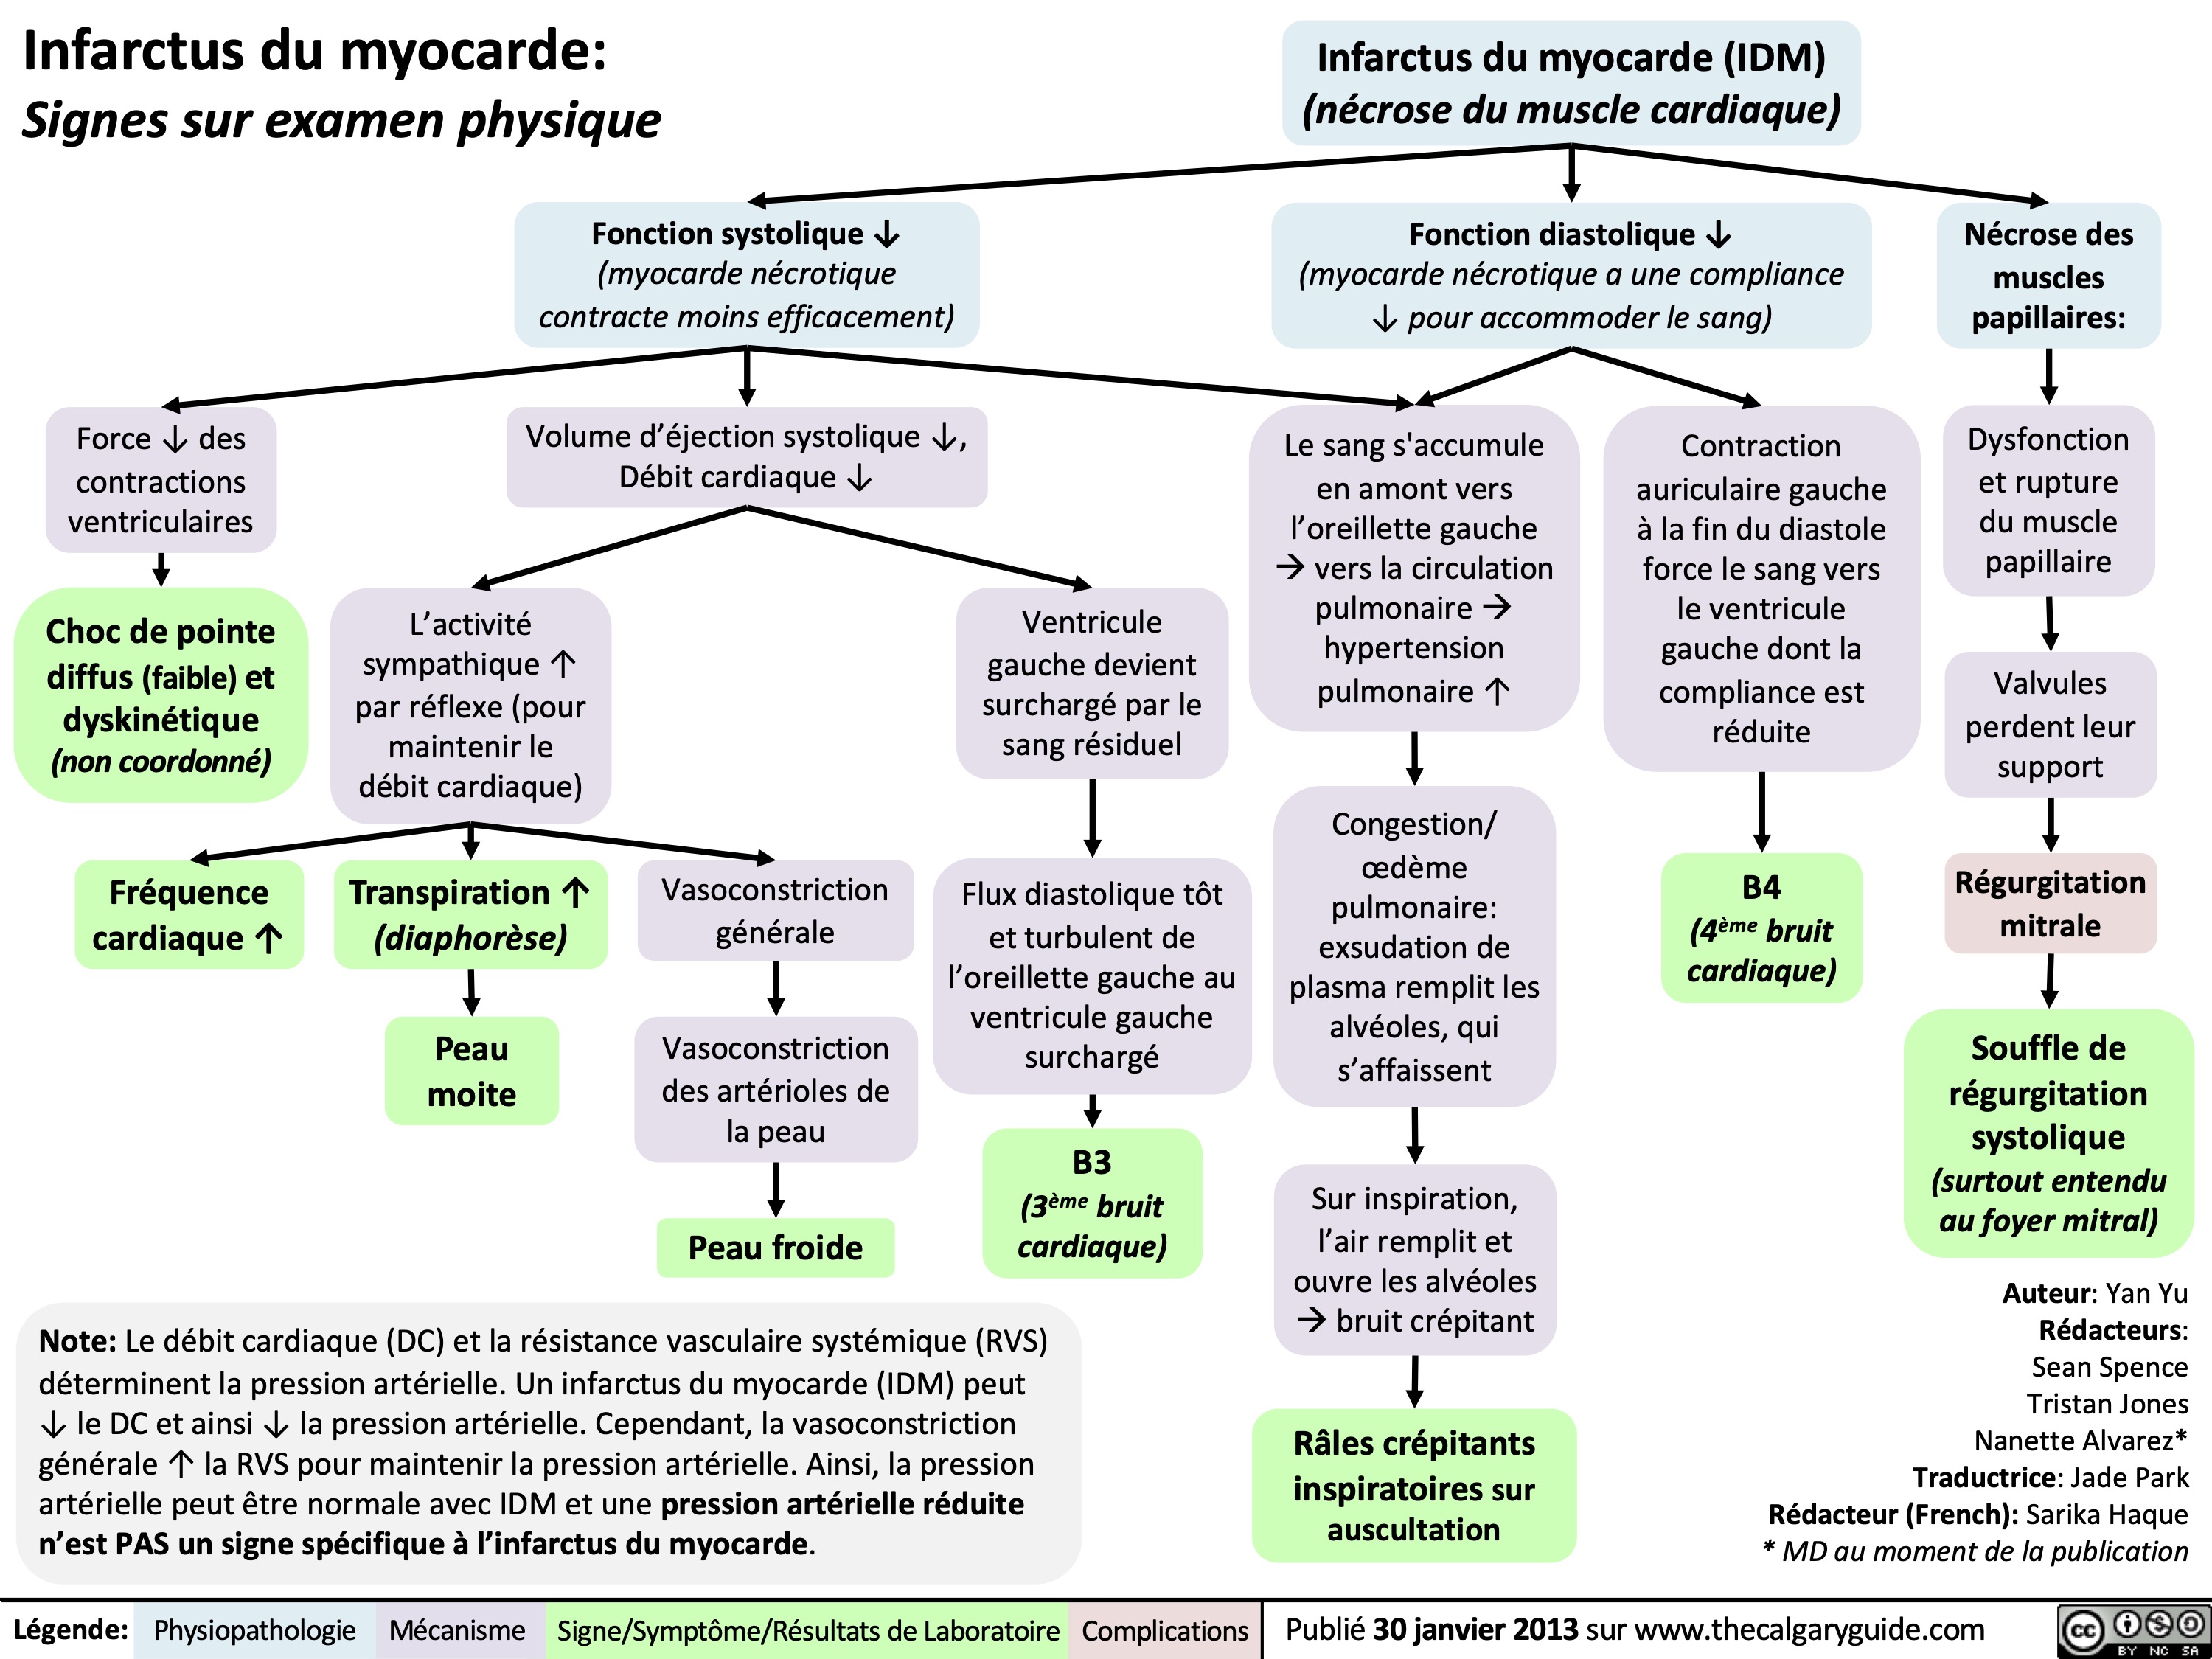 Infarctus du myocarde:
Signes sur examen physique